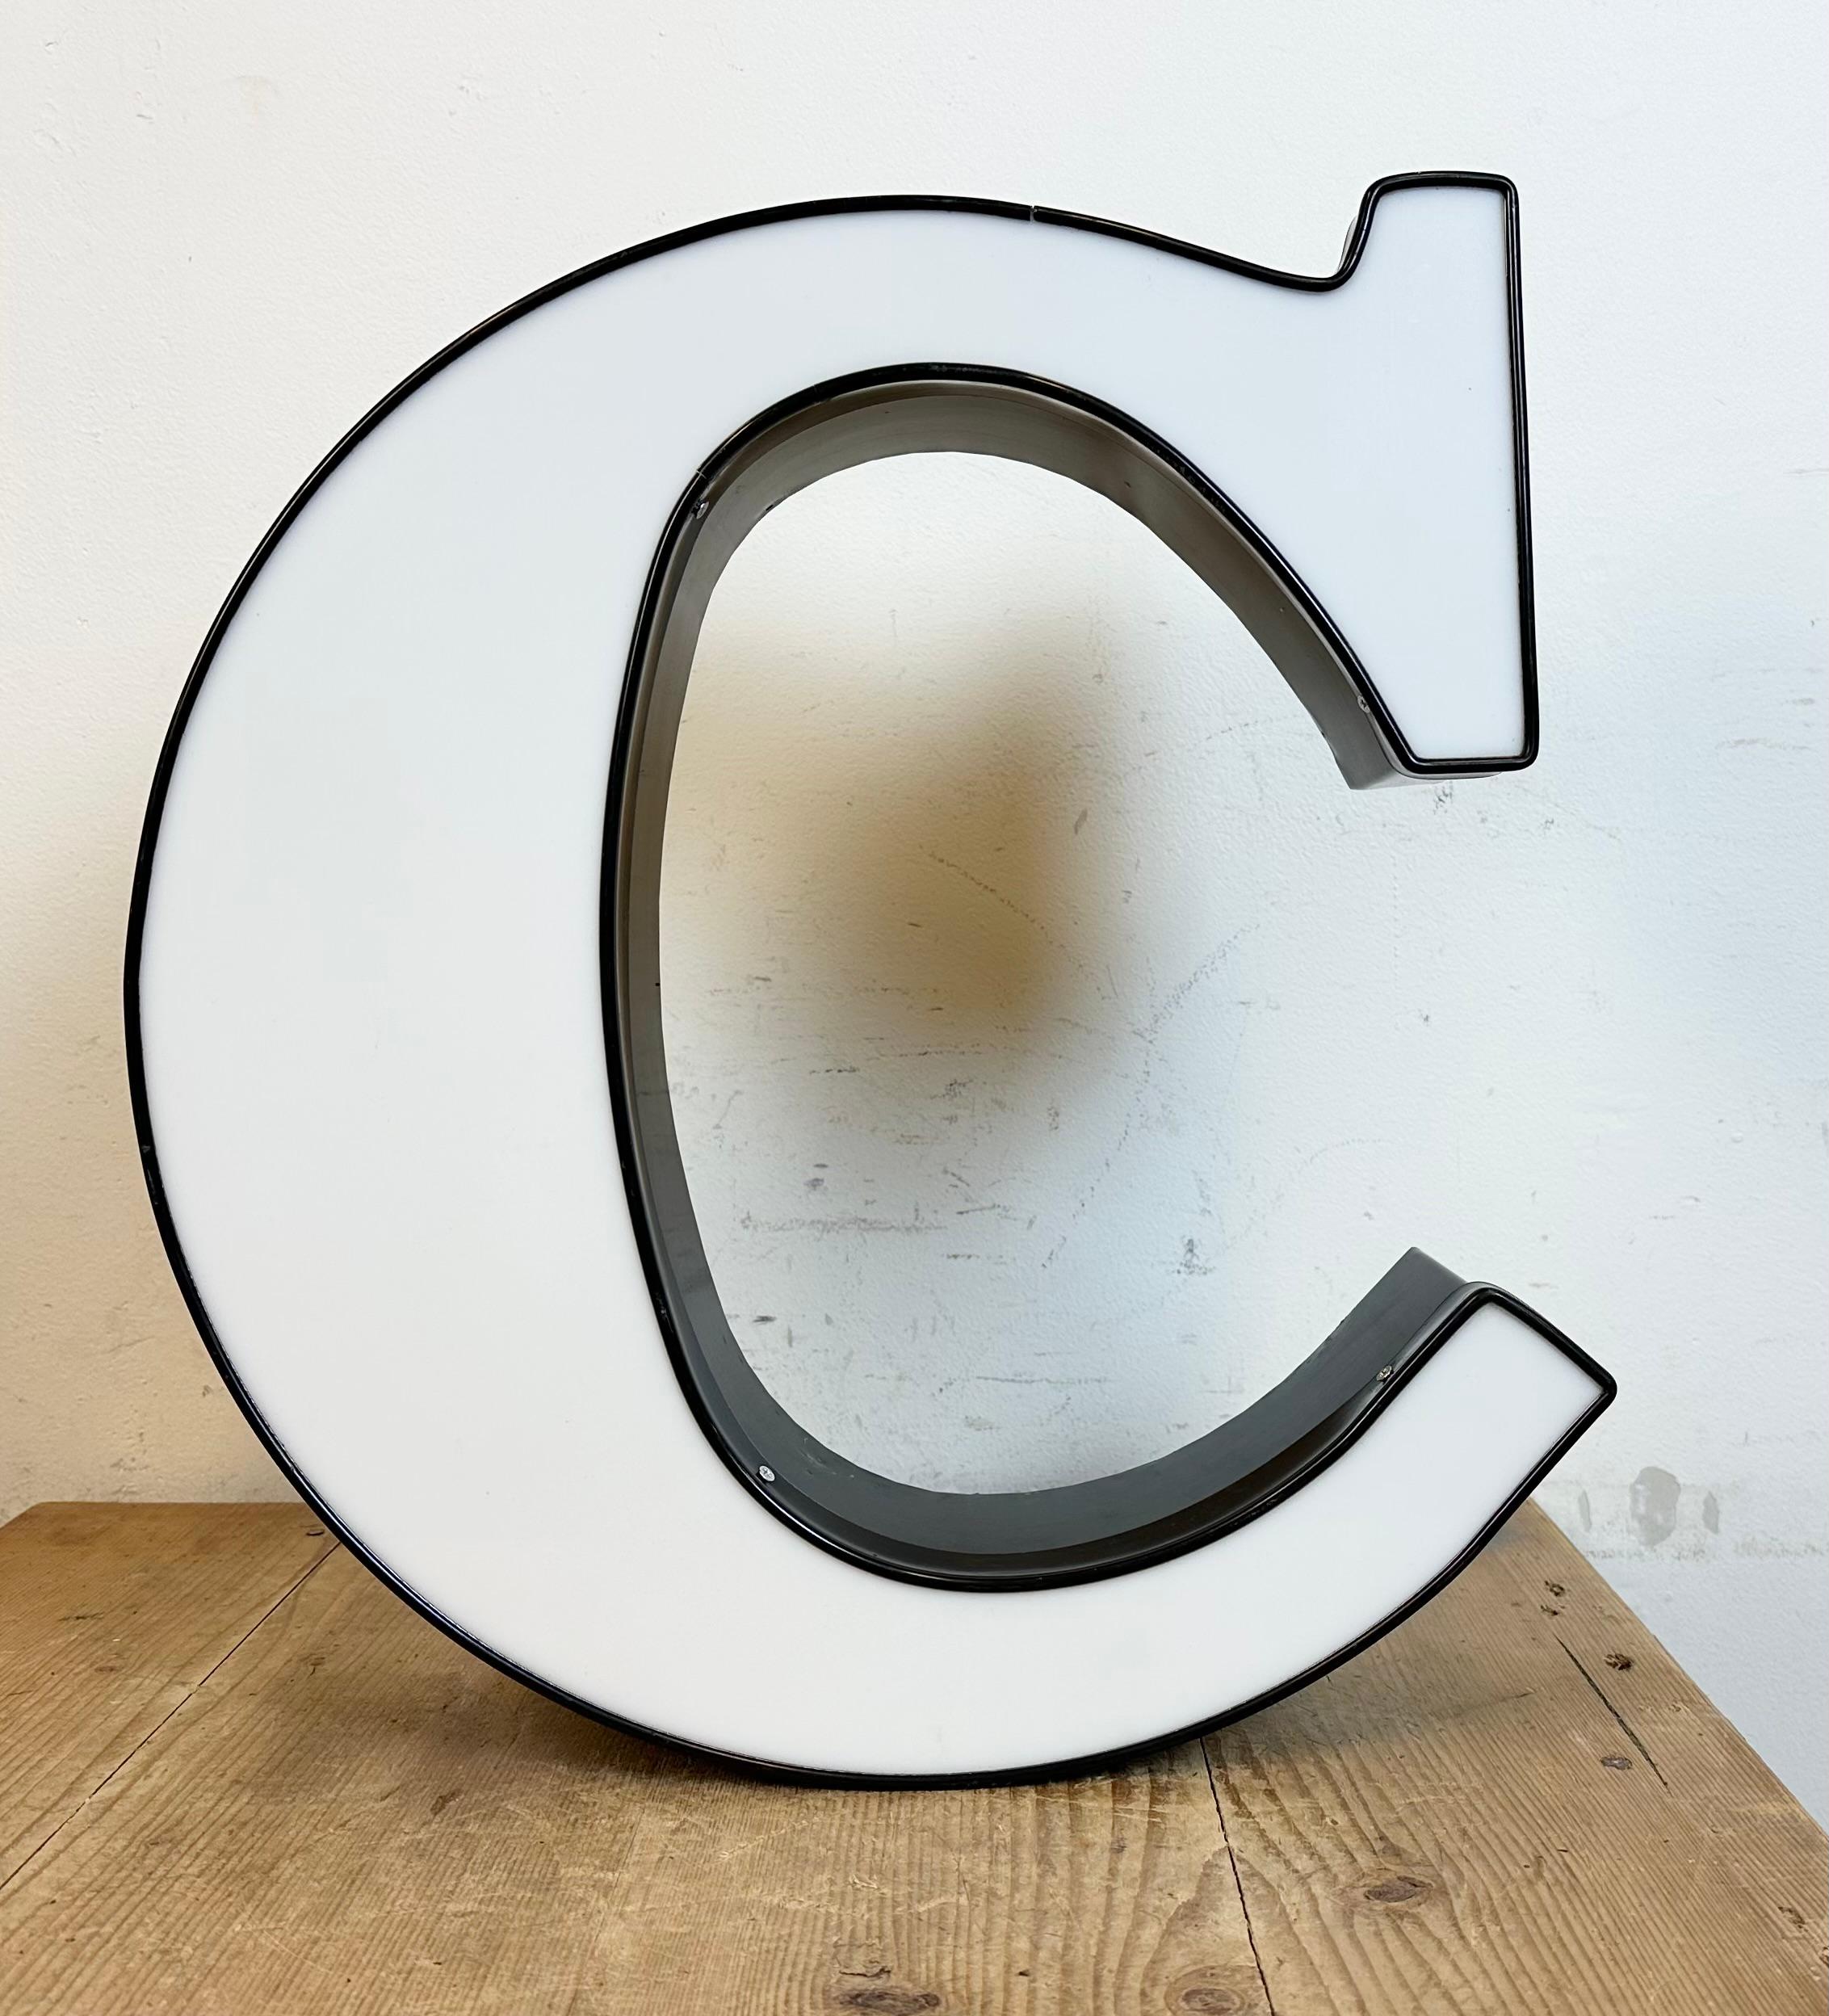 c illuminated letter